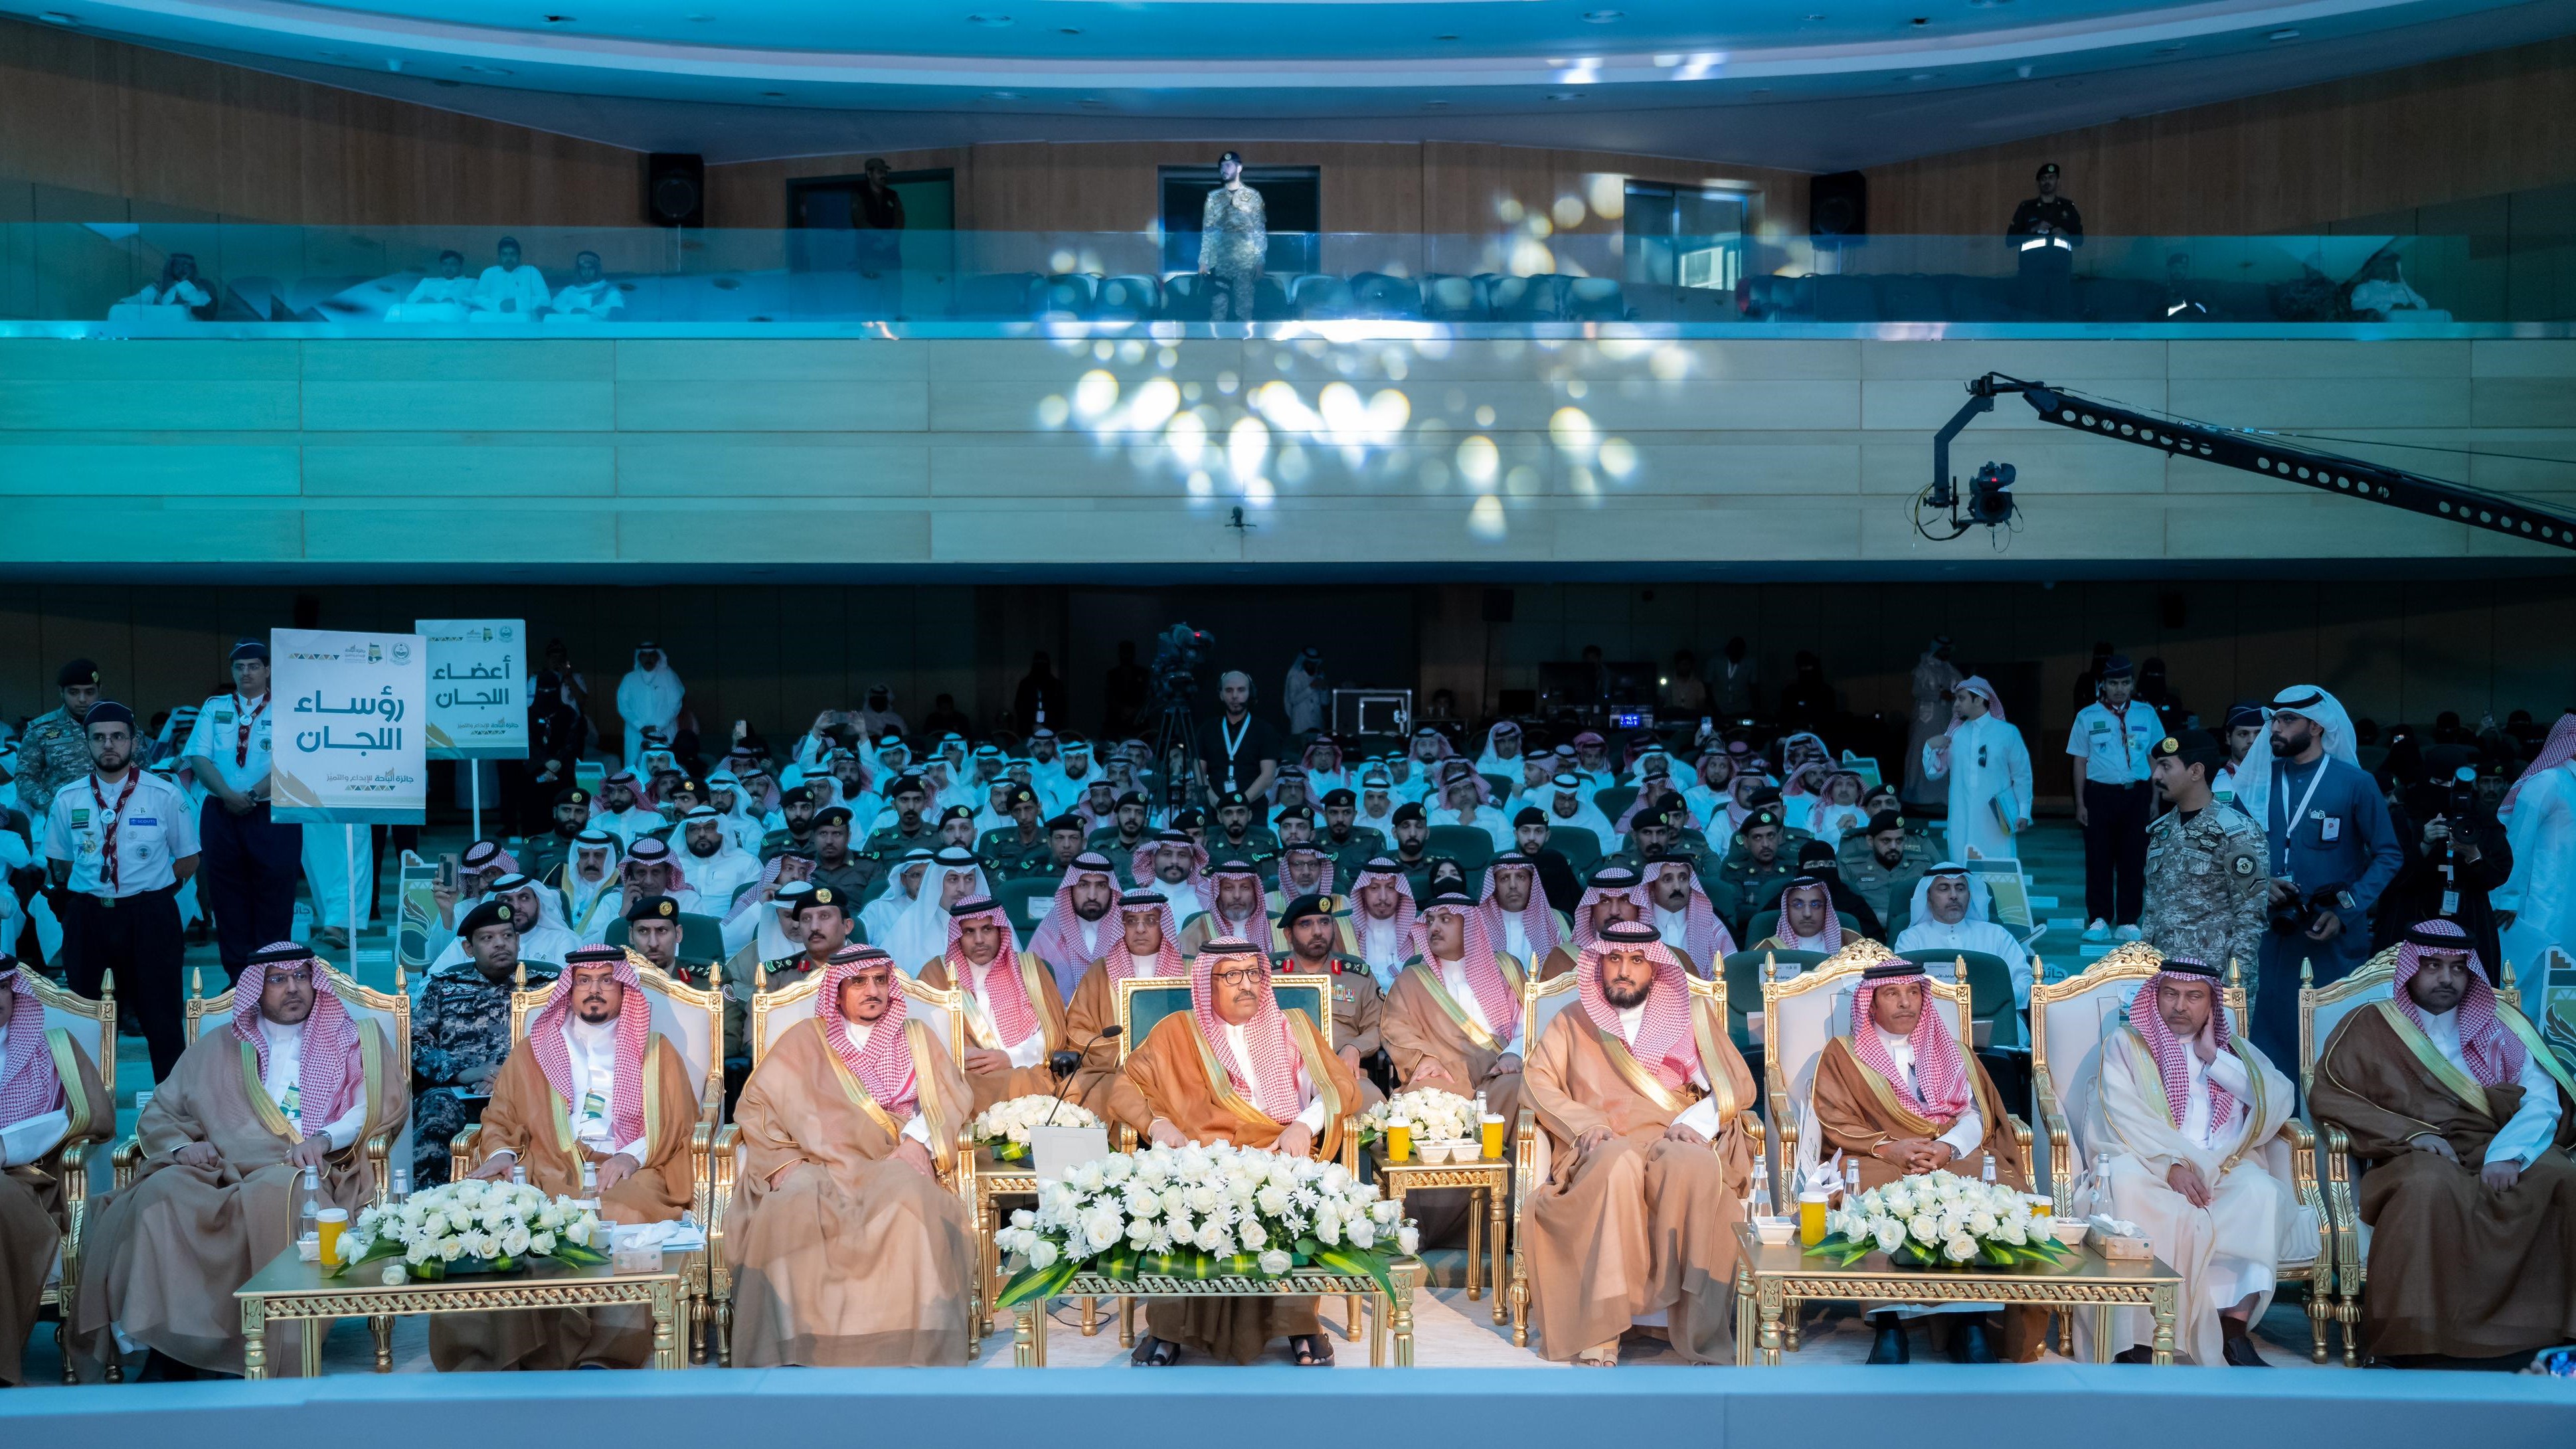 سمو الأمير حسام بن سعود يكرّم 29 فائزاً وفائزة بجائزة الباحة للإبداع والتميز ويؤكد سموه : "من الحق علينا أن نُكرم الإبداع ونُقدر التميز ونحتفي بكل نجاح، في مسيرة عملٍ طموحٍ واضح الرؤية"